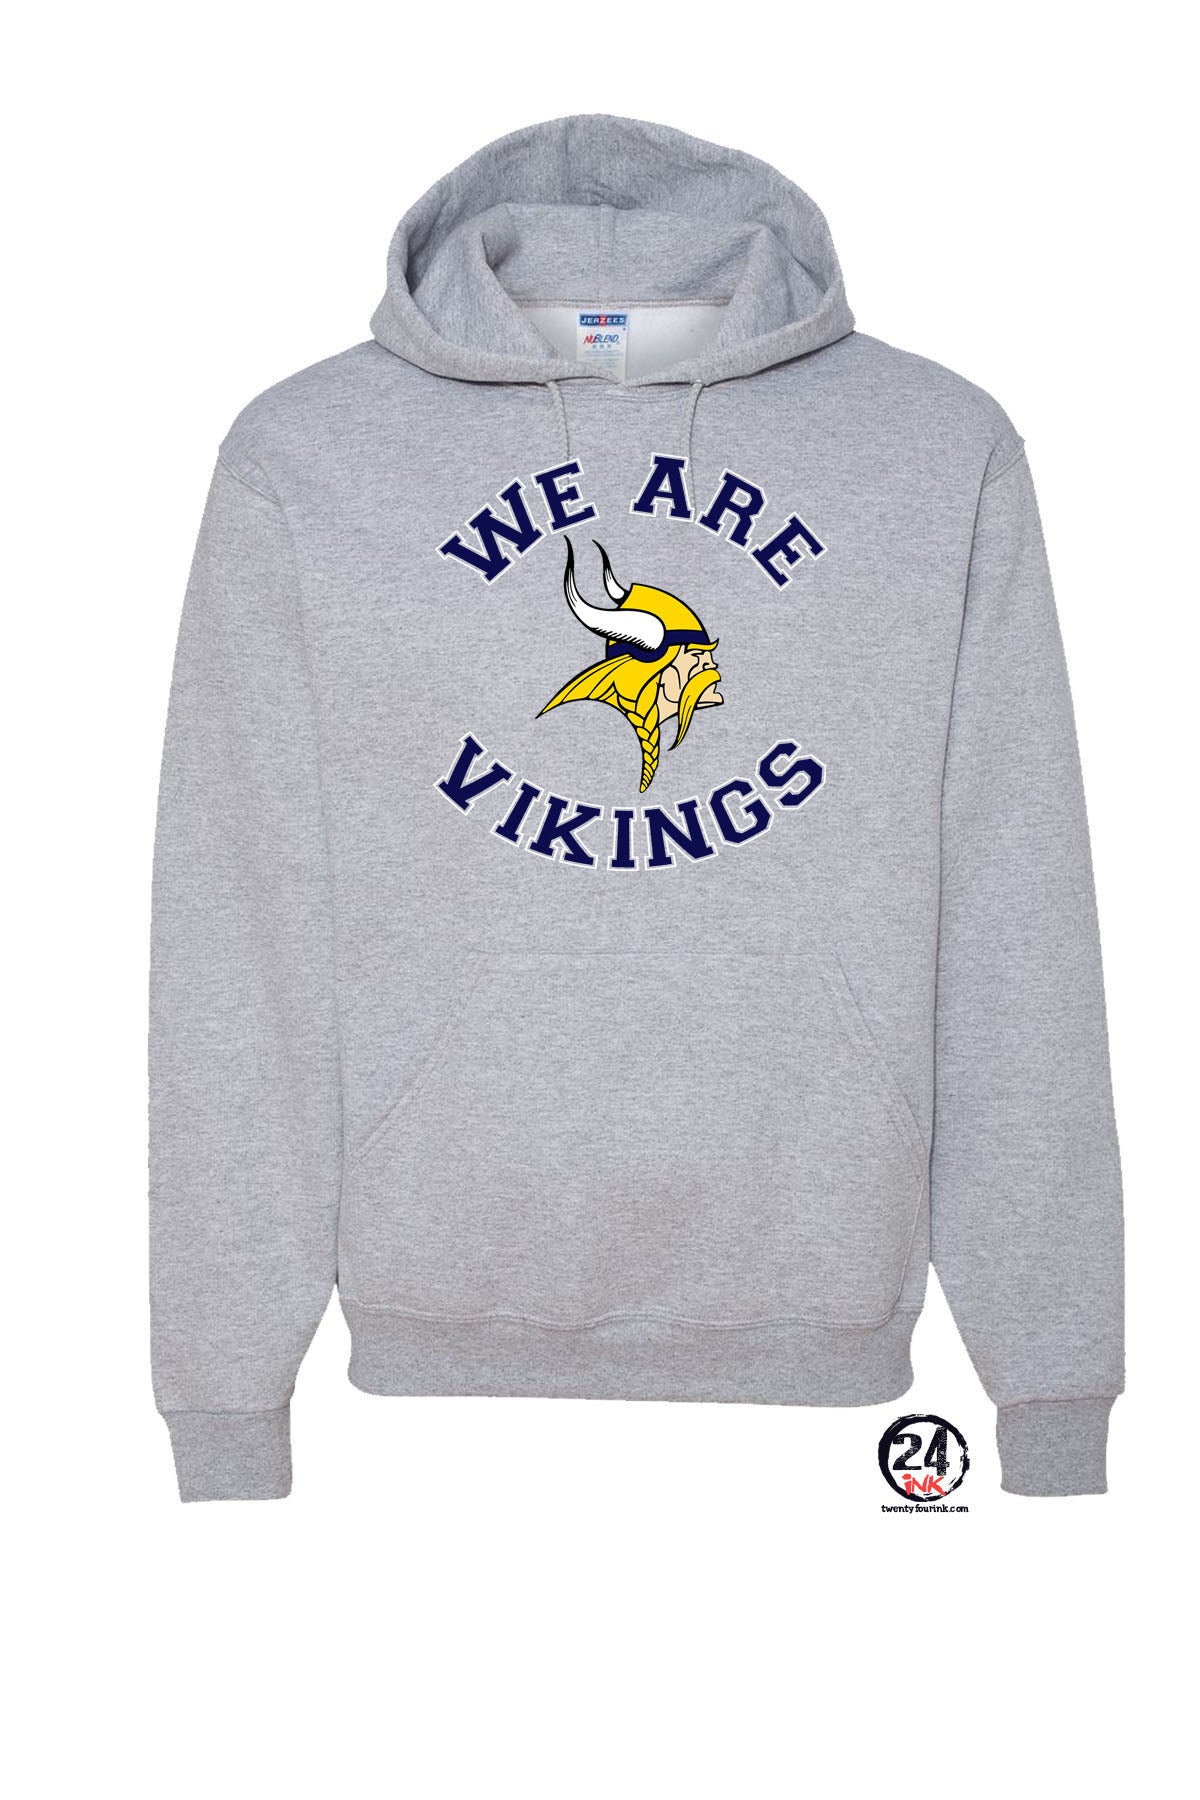 We are Vikings Hooded Sweatshirt